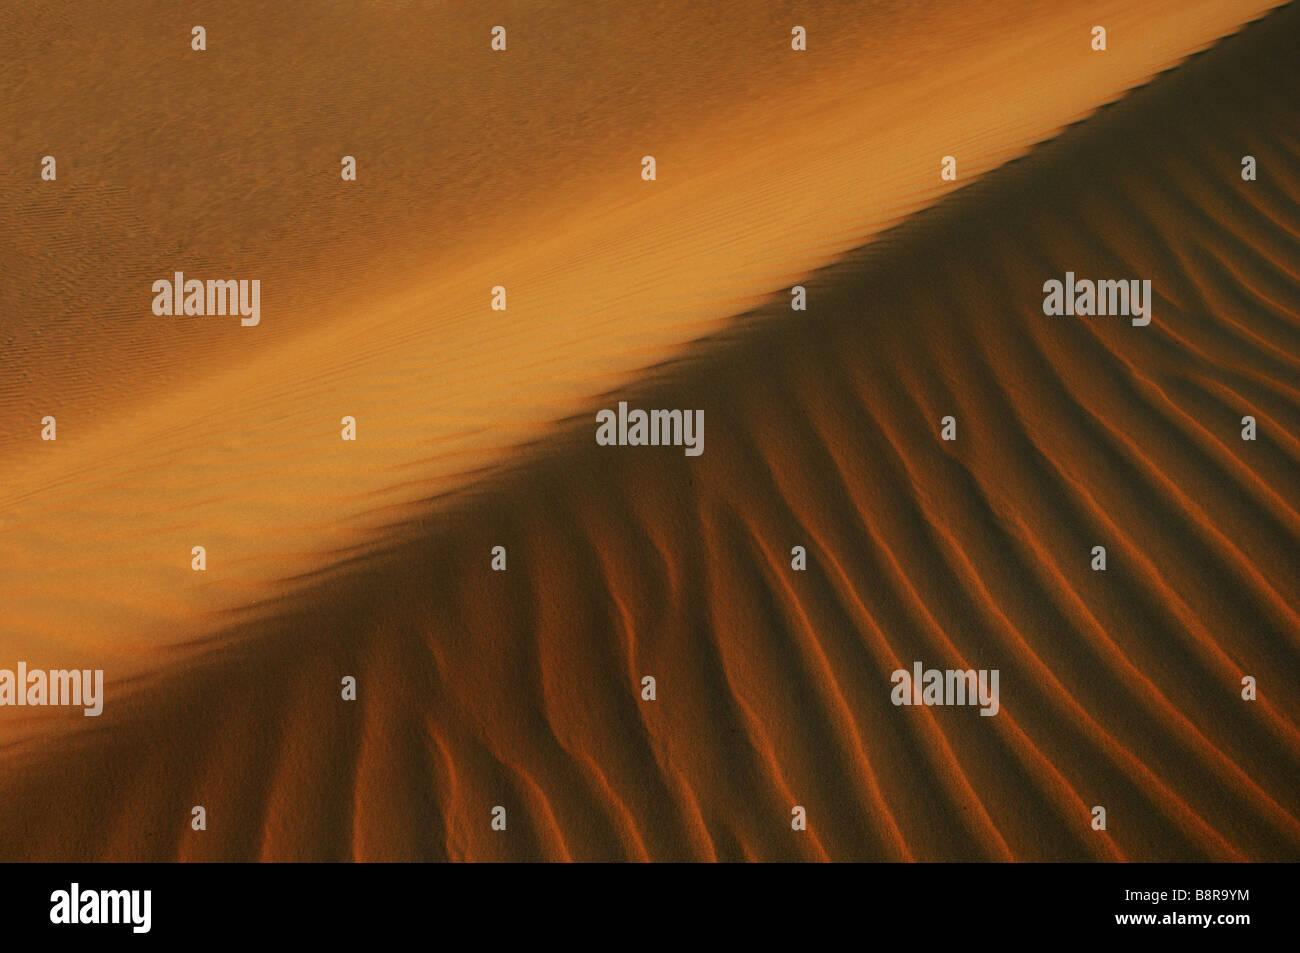 dunes with ripple marks, Egypt, White Desert National Park Stock Photo